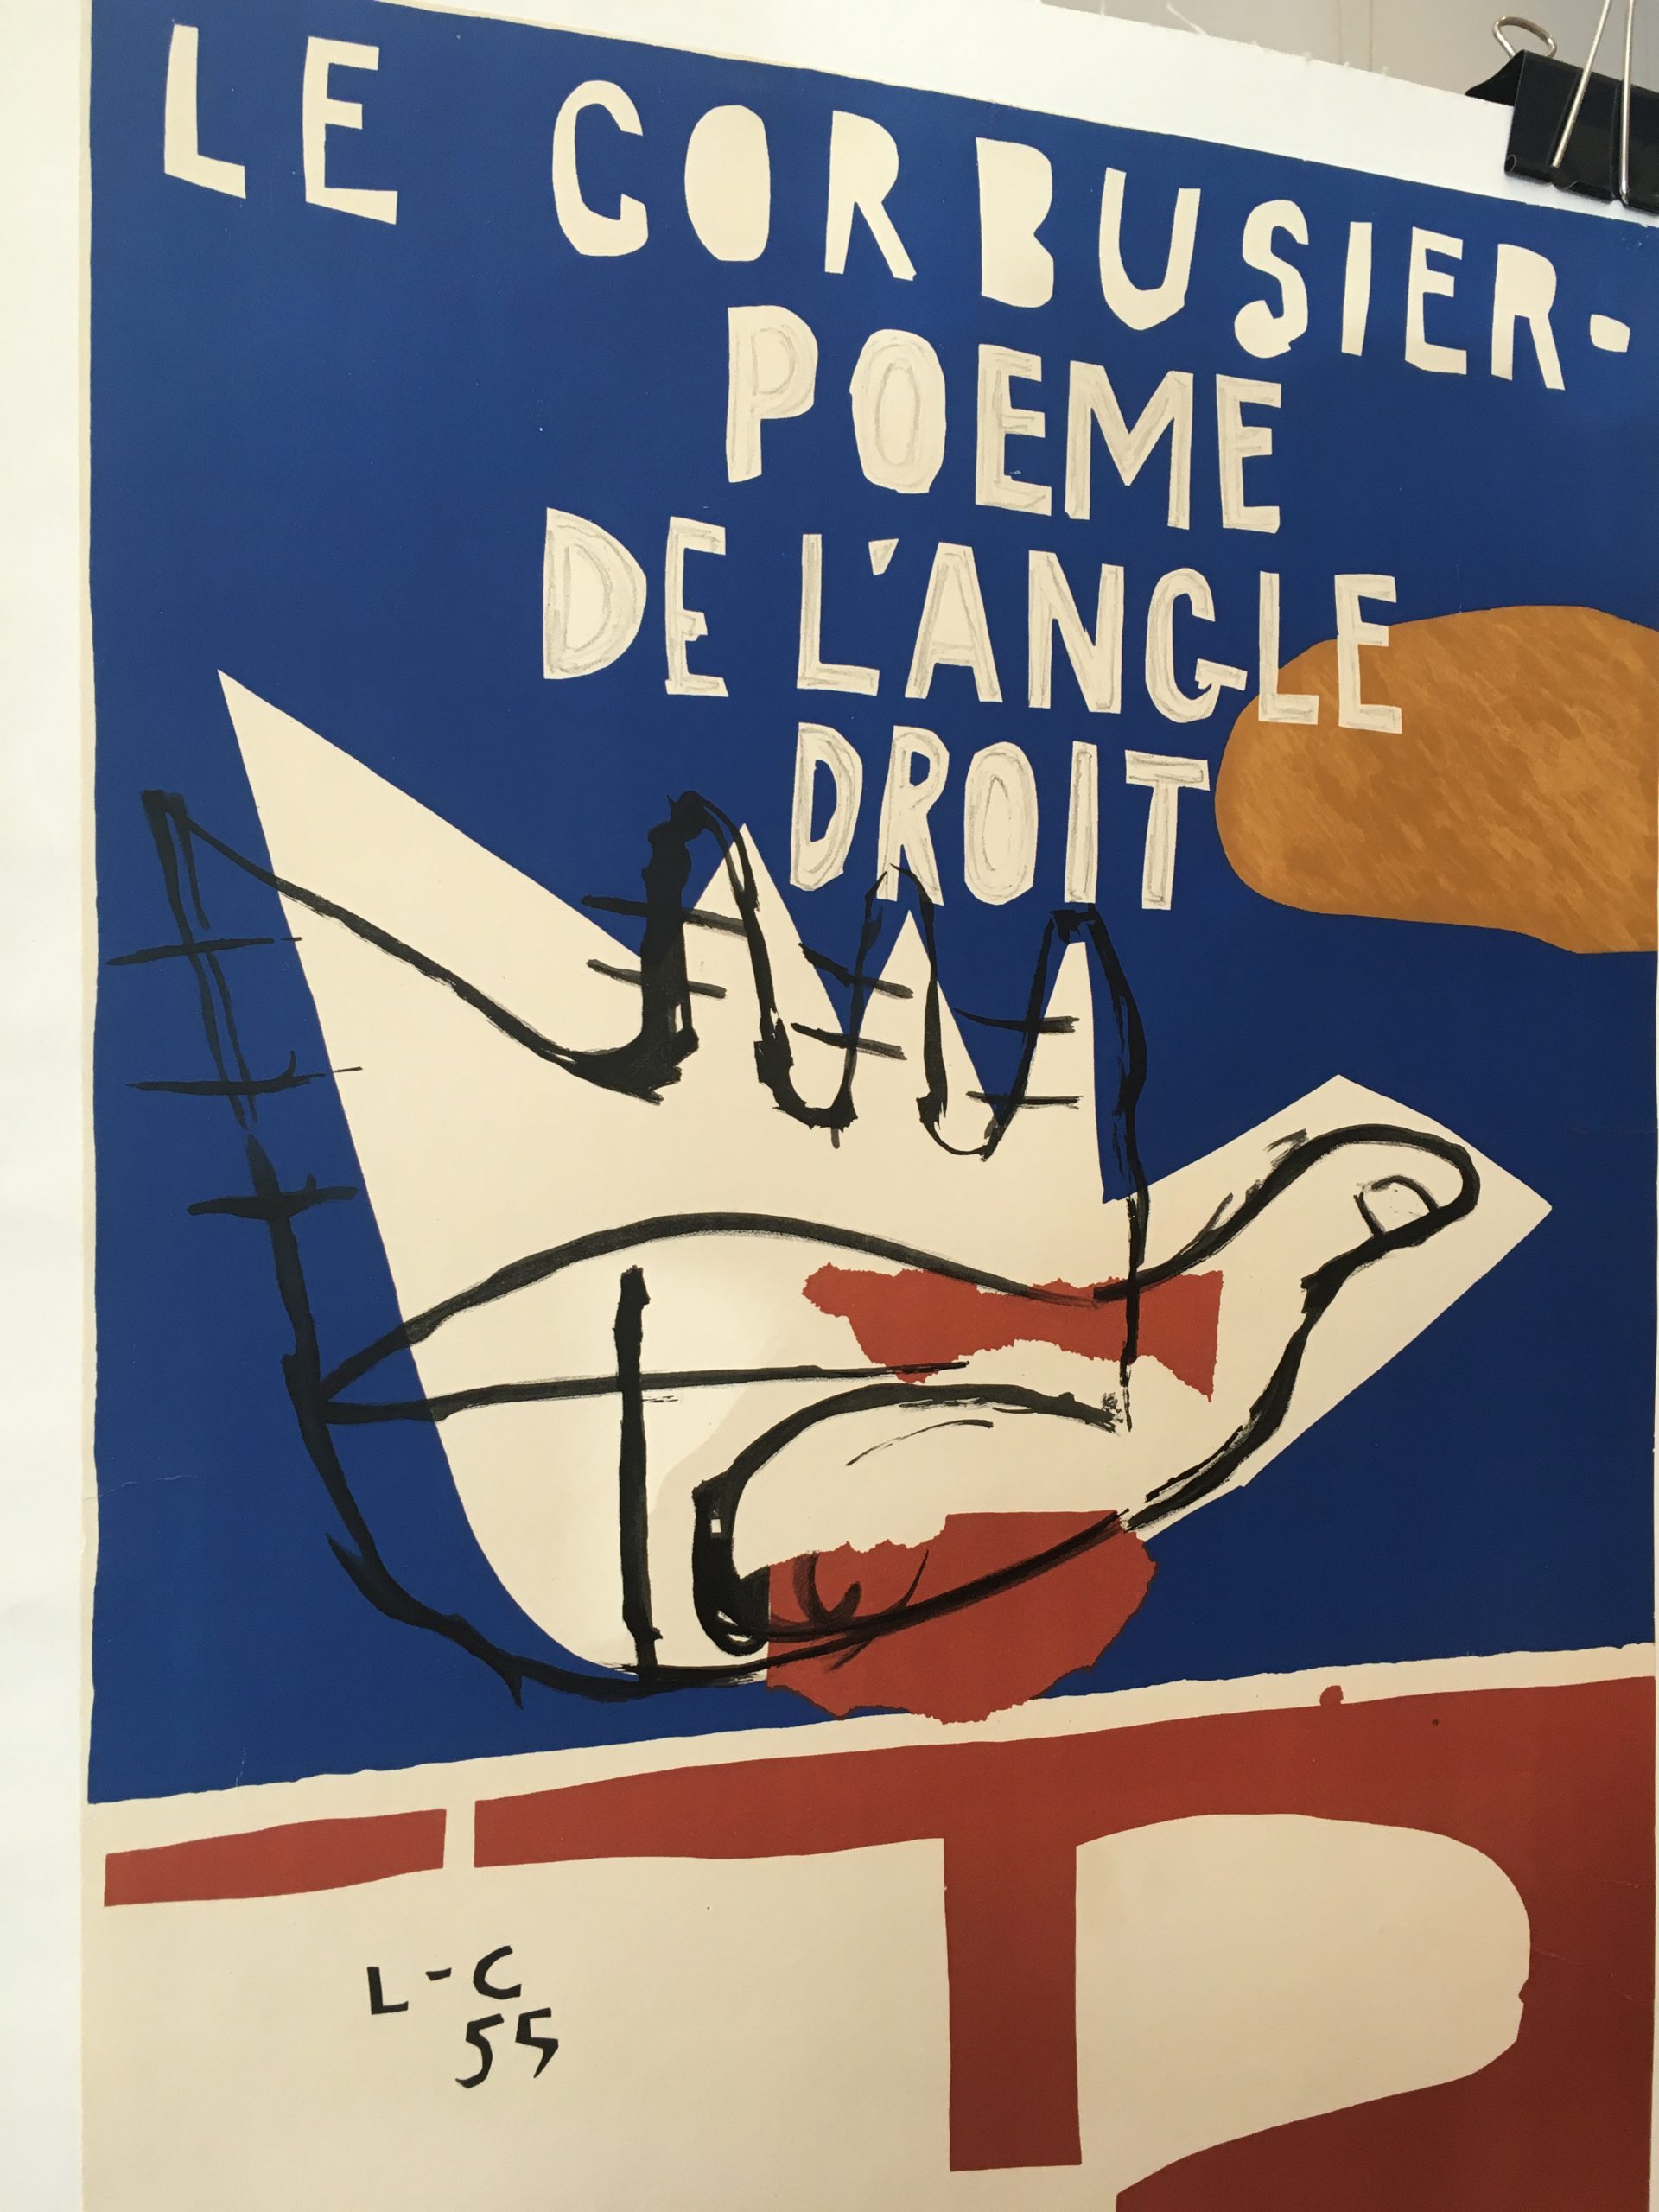 Le Corbusier: Le poème de l'angle droit